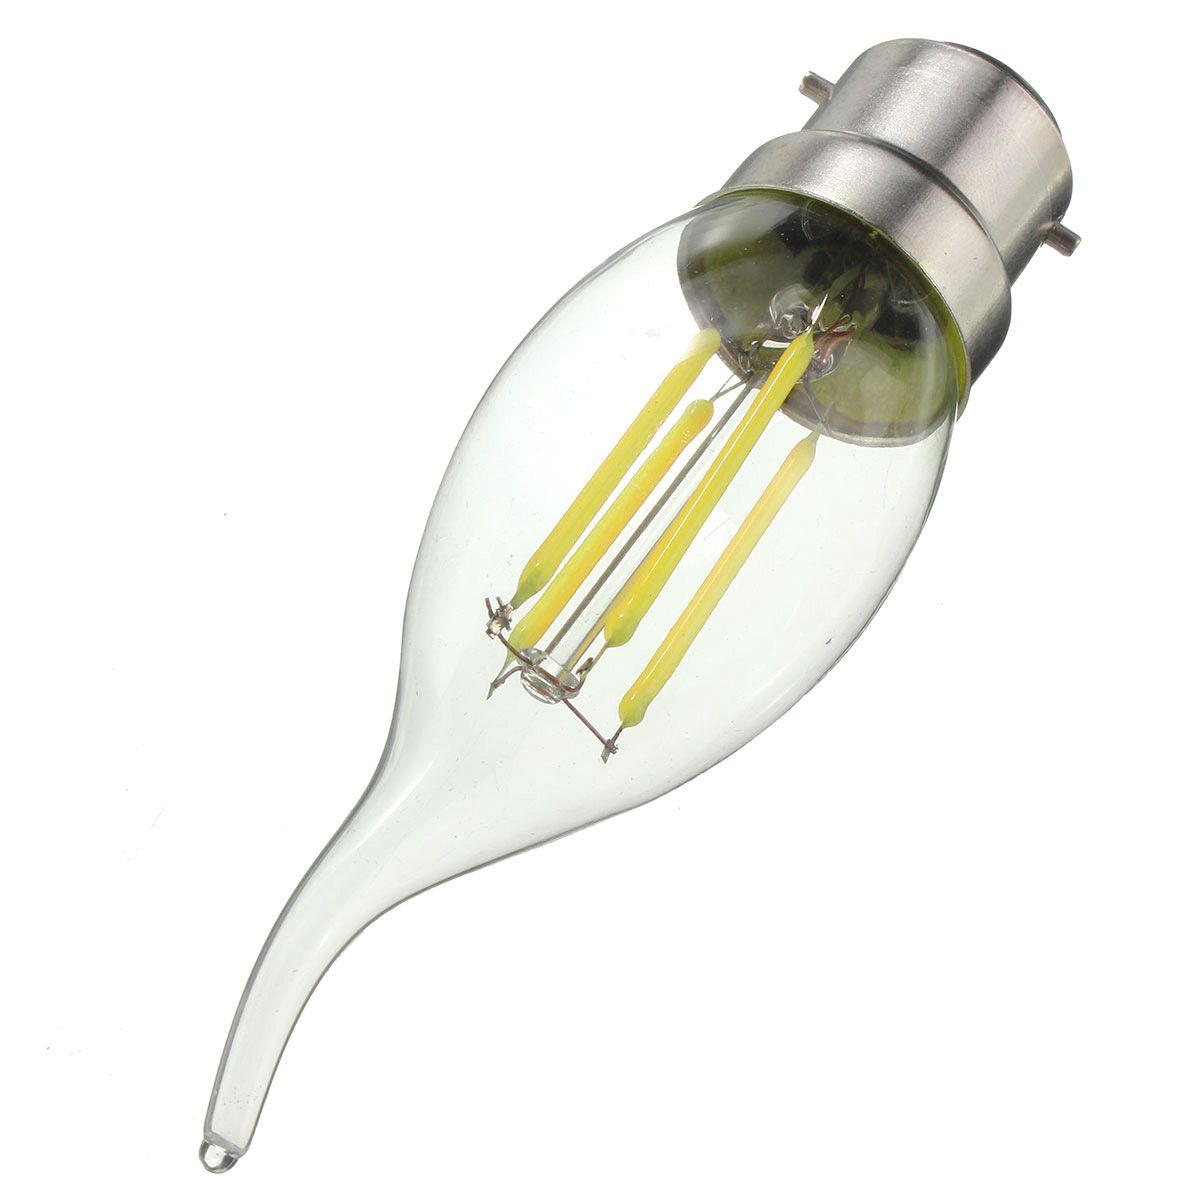 Dimmable-AC220V-B22-C35-4W-Warm-White-LED-Filament-COB-Retro-Edison-Light-Bulb-1072037